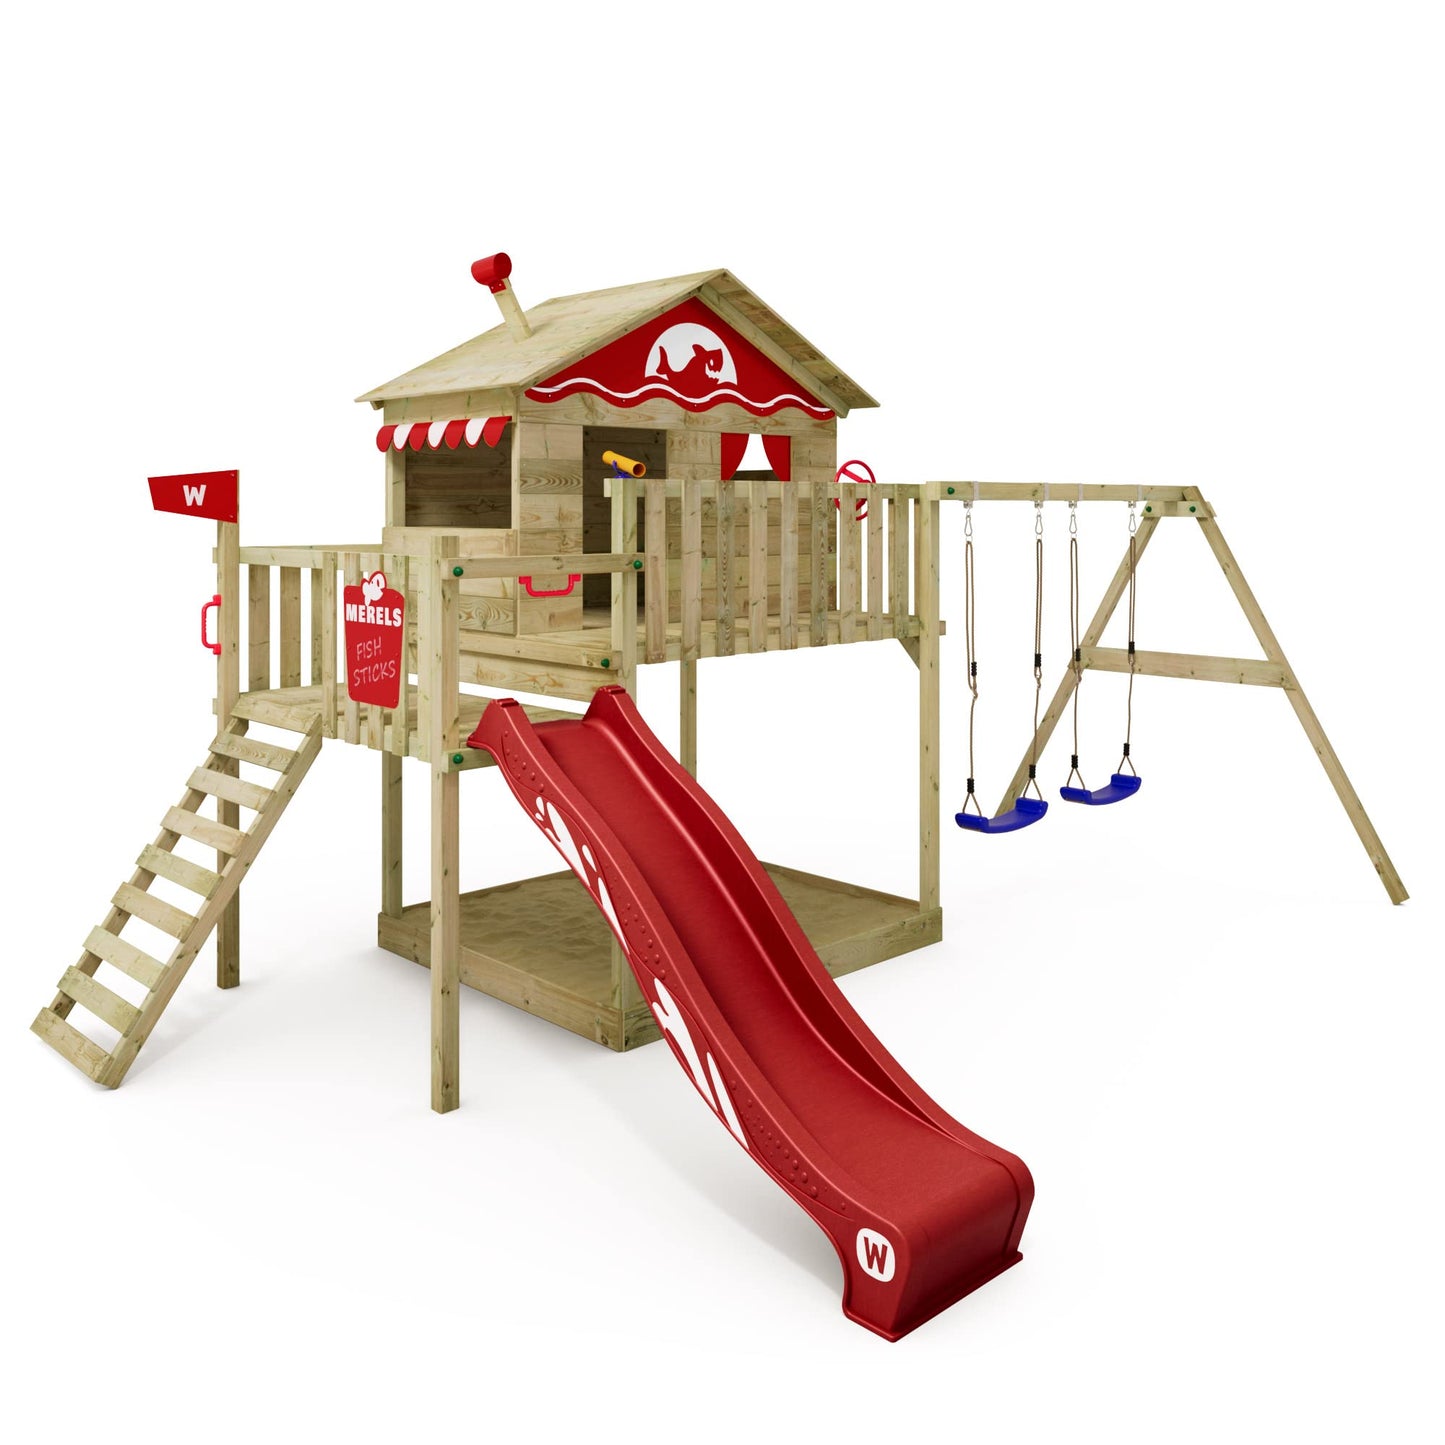 WICKEY Parque Infantil Smart Coast con Columpio y tobogán Rojo, Torre de Escalada Infantil de Exterior con arenero, Escalera y Accesorios de Juego para el jardín